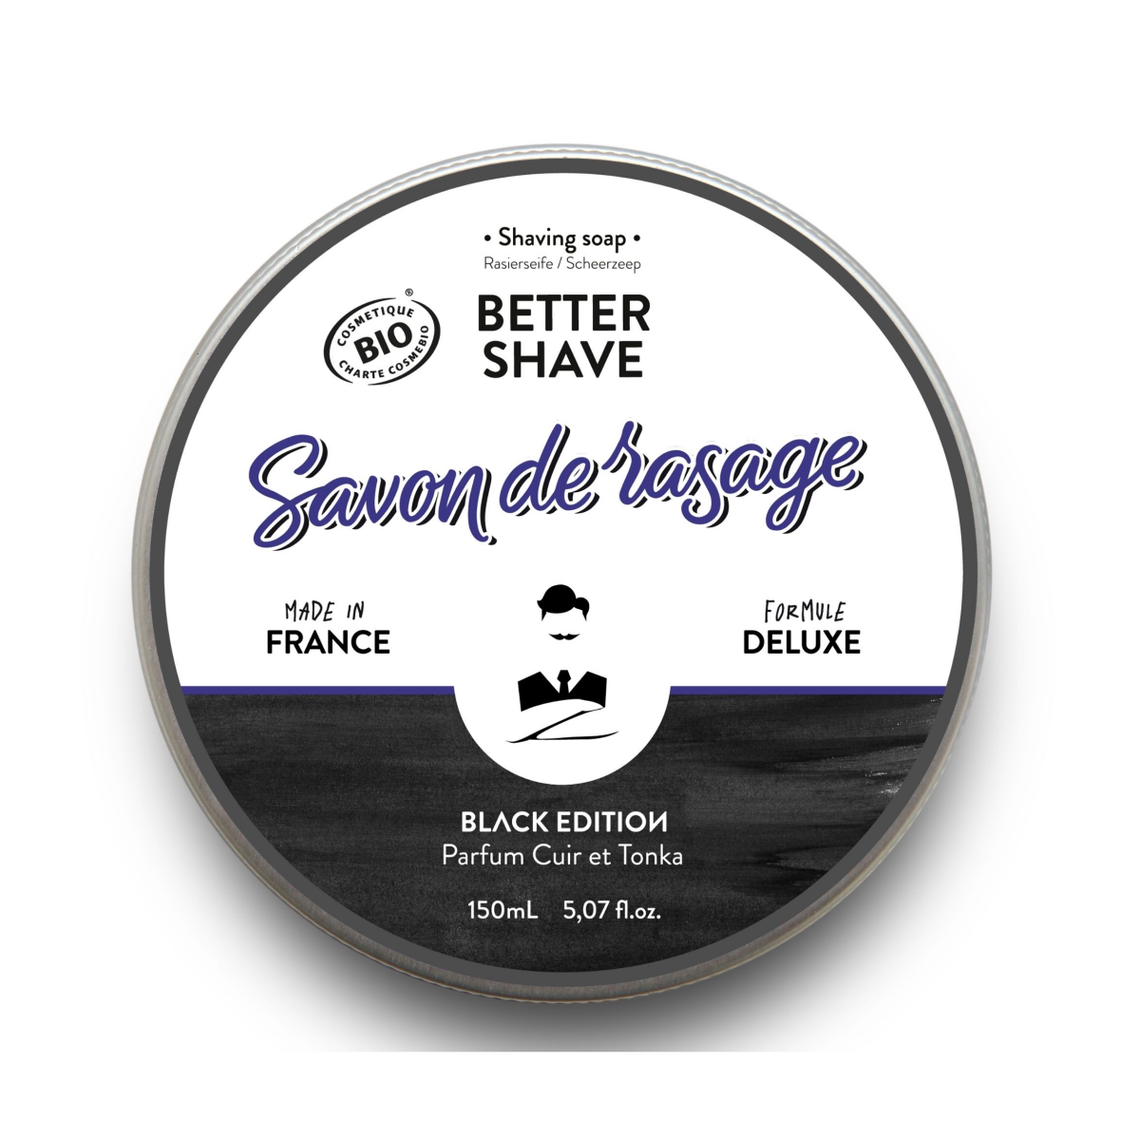 Savon de rasage Traditionnel 2-en-1 - Better Shave Black Edition 150 ml